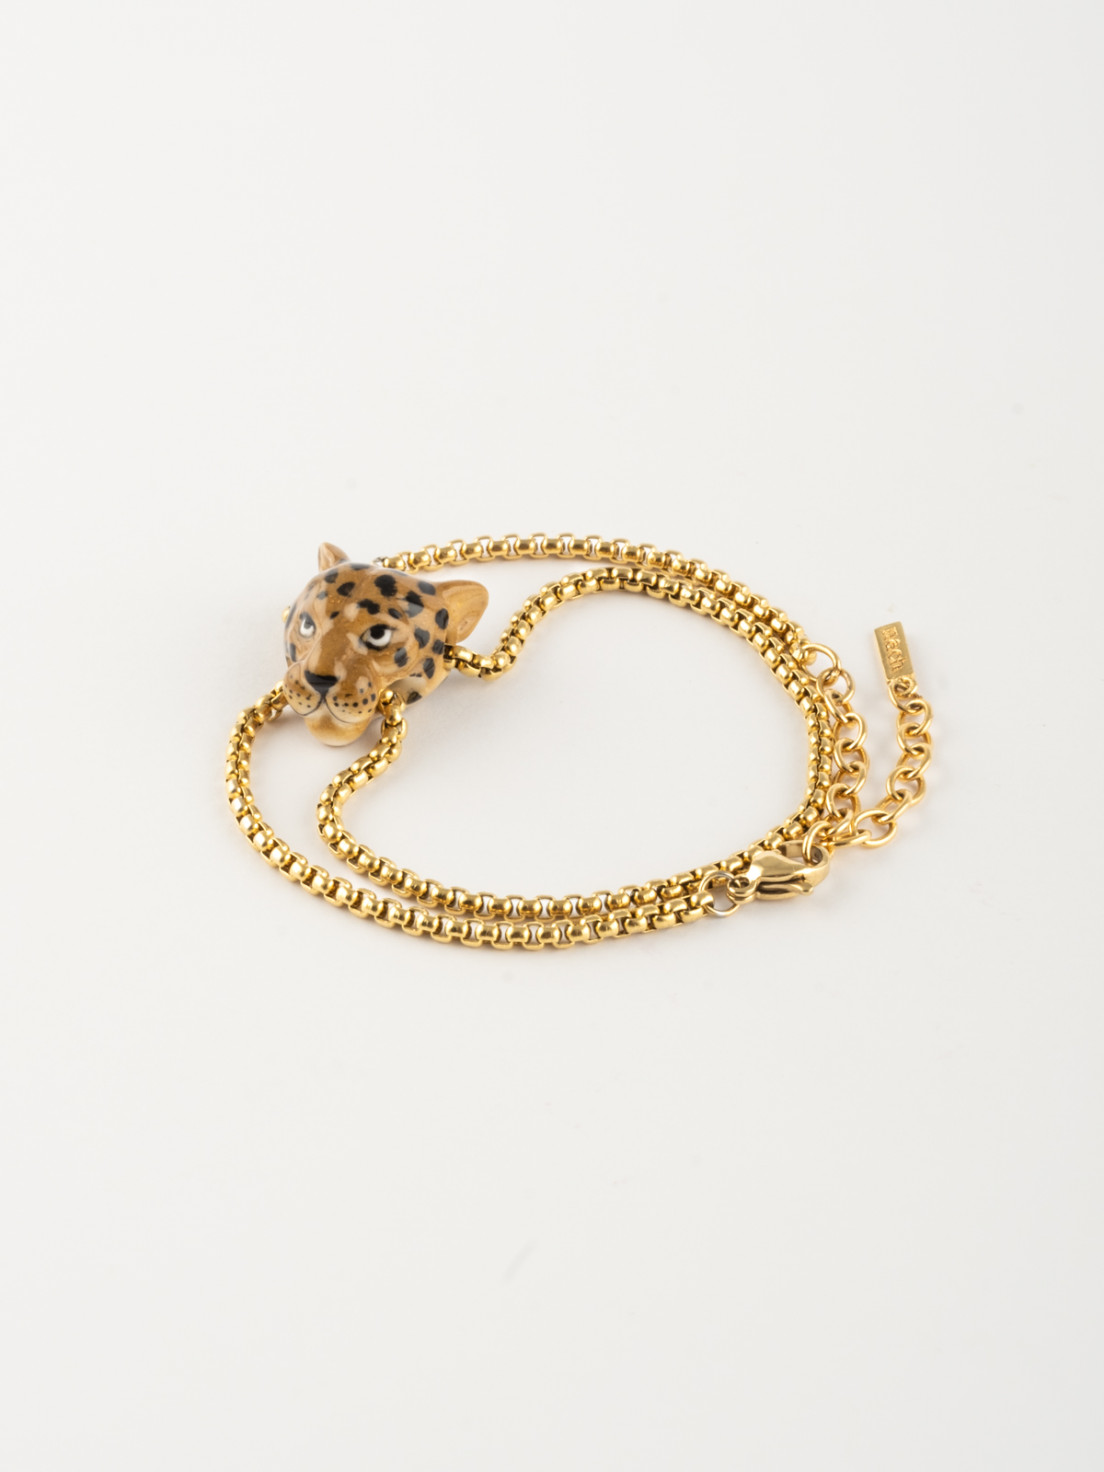 ZHANGWW 2PIC Europe Leopard Velvet Leather Bracelet For Women